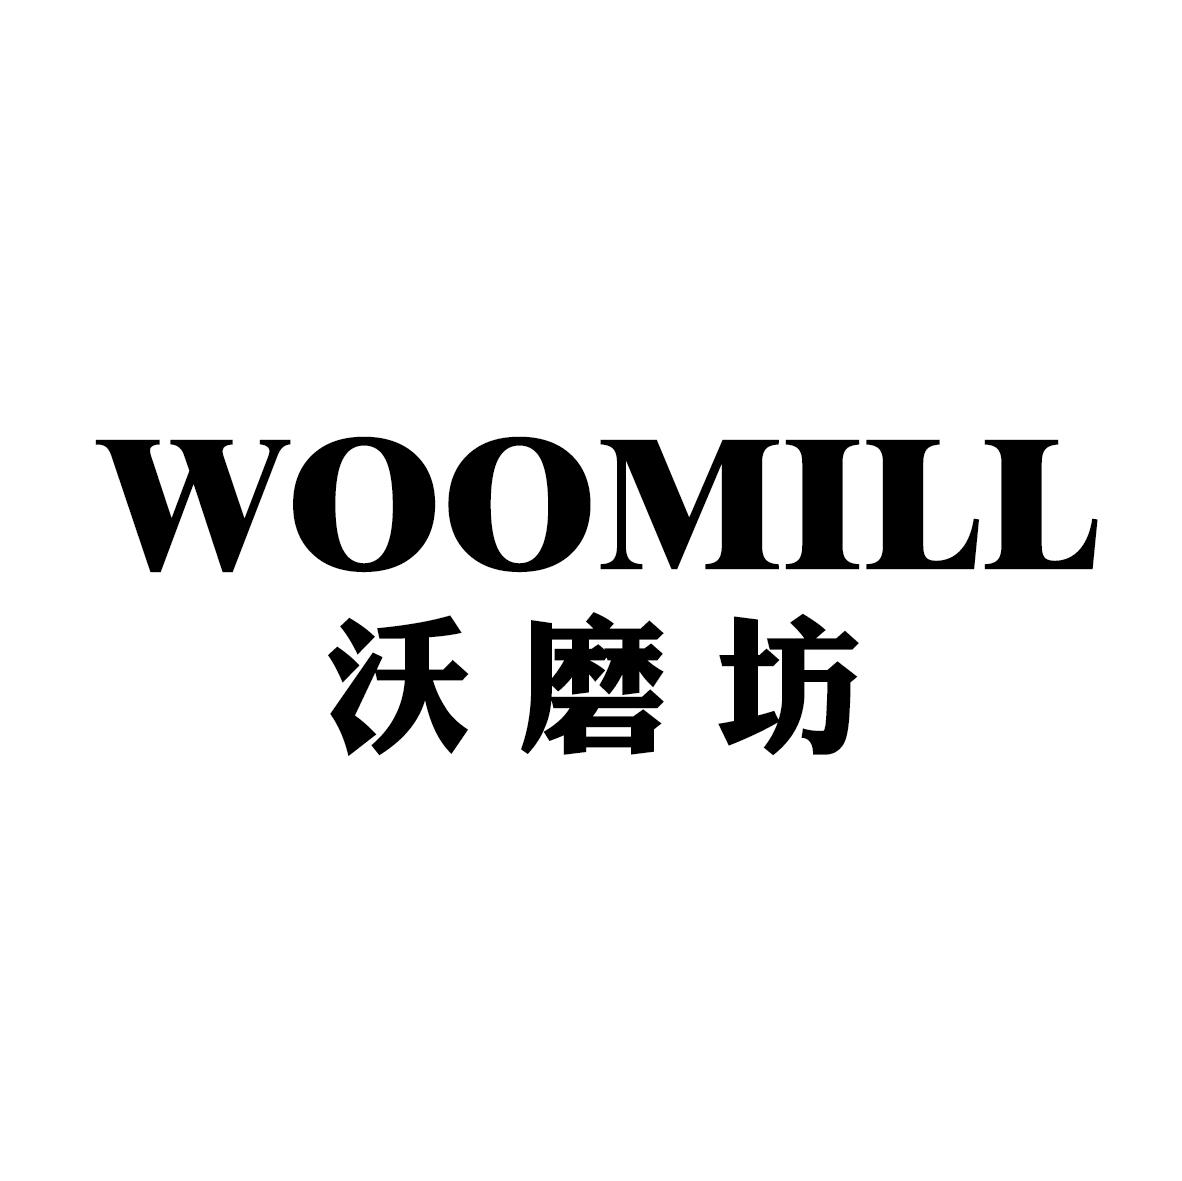 沃磨坊 WOOMILL